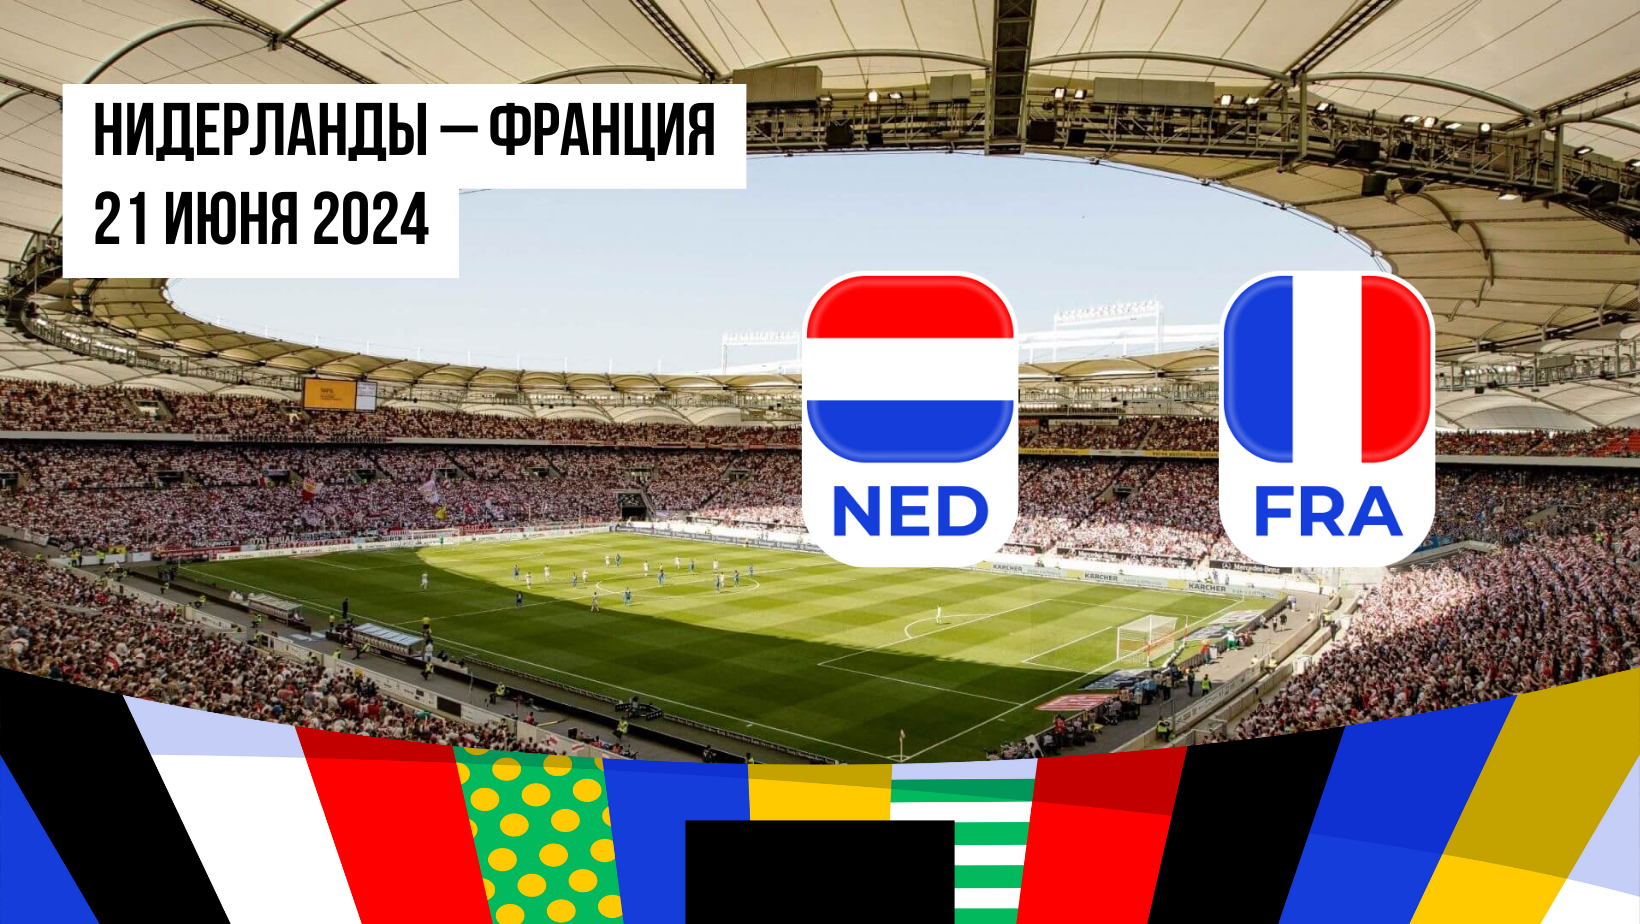 Нидерланды – Франция: ставки и коэффициенты на матч Евро-2024 — 21 июня